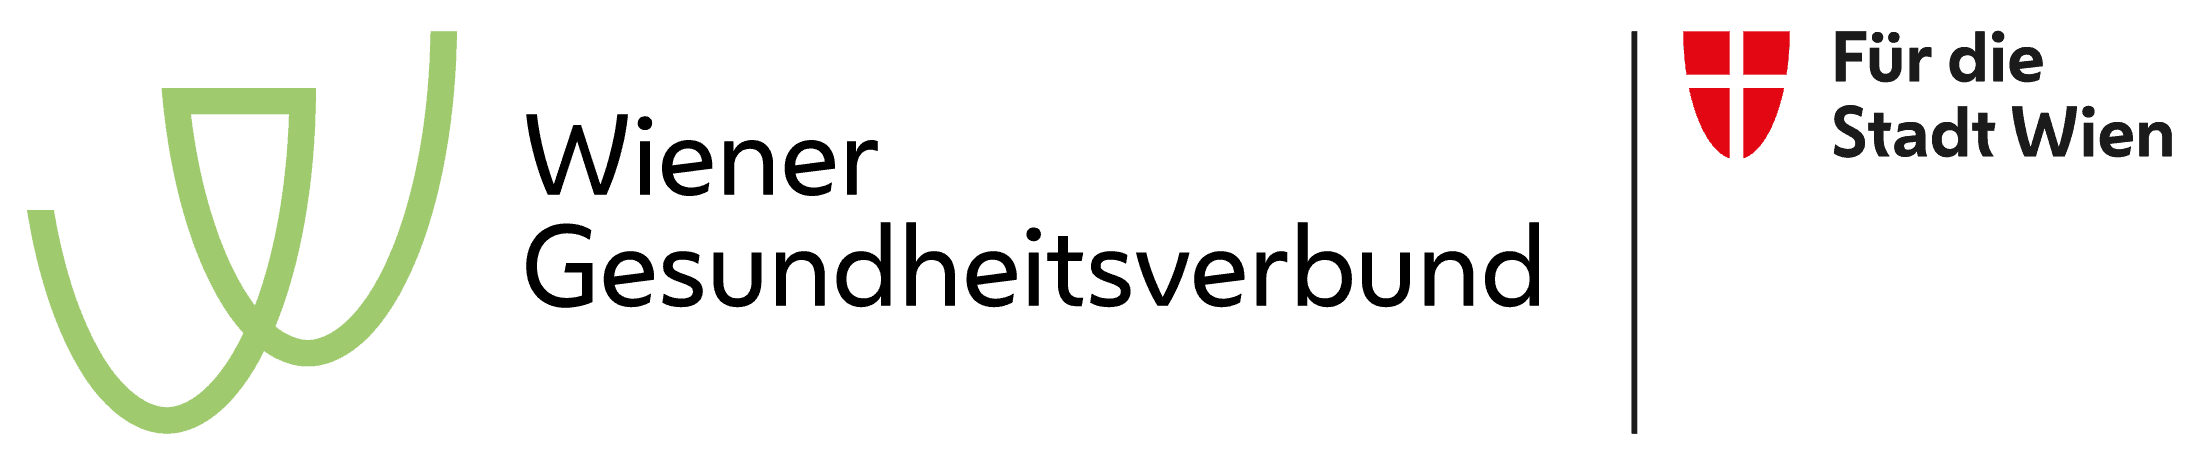 Logo: Wiener Gesundheitsverbund